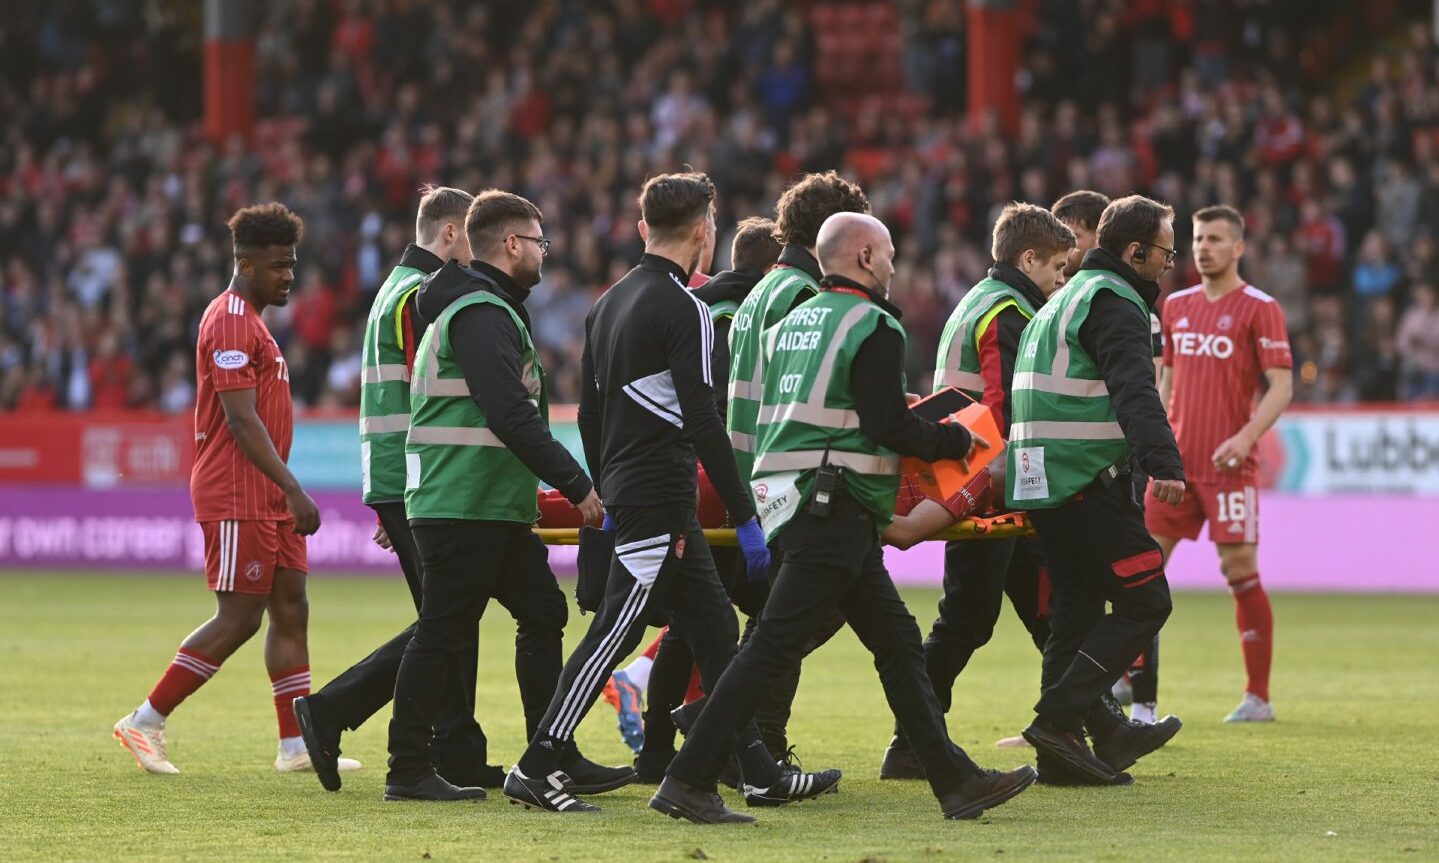 Aberdeen striker Bojan Miovski is stretchered off with an ankle injury against St Mirren.